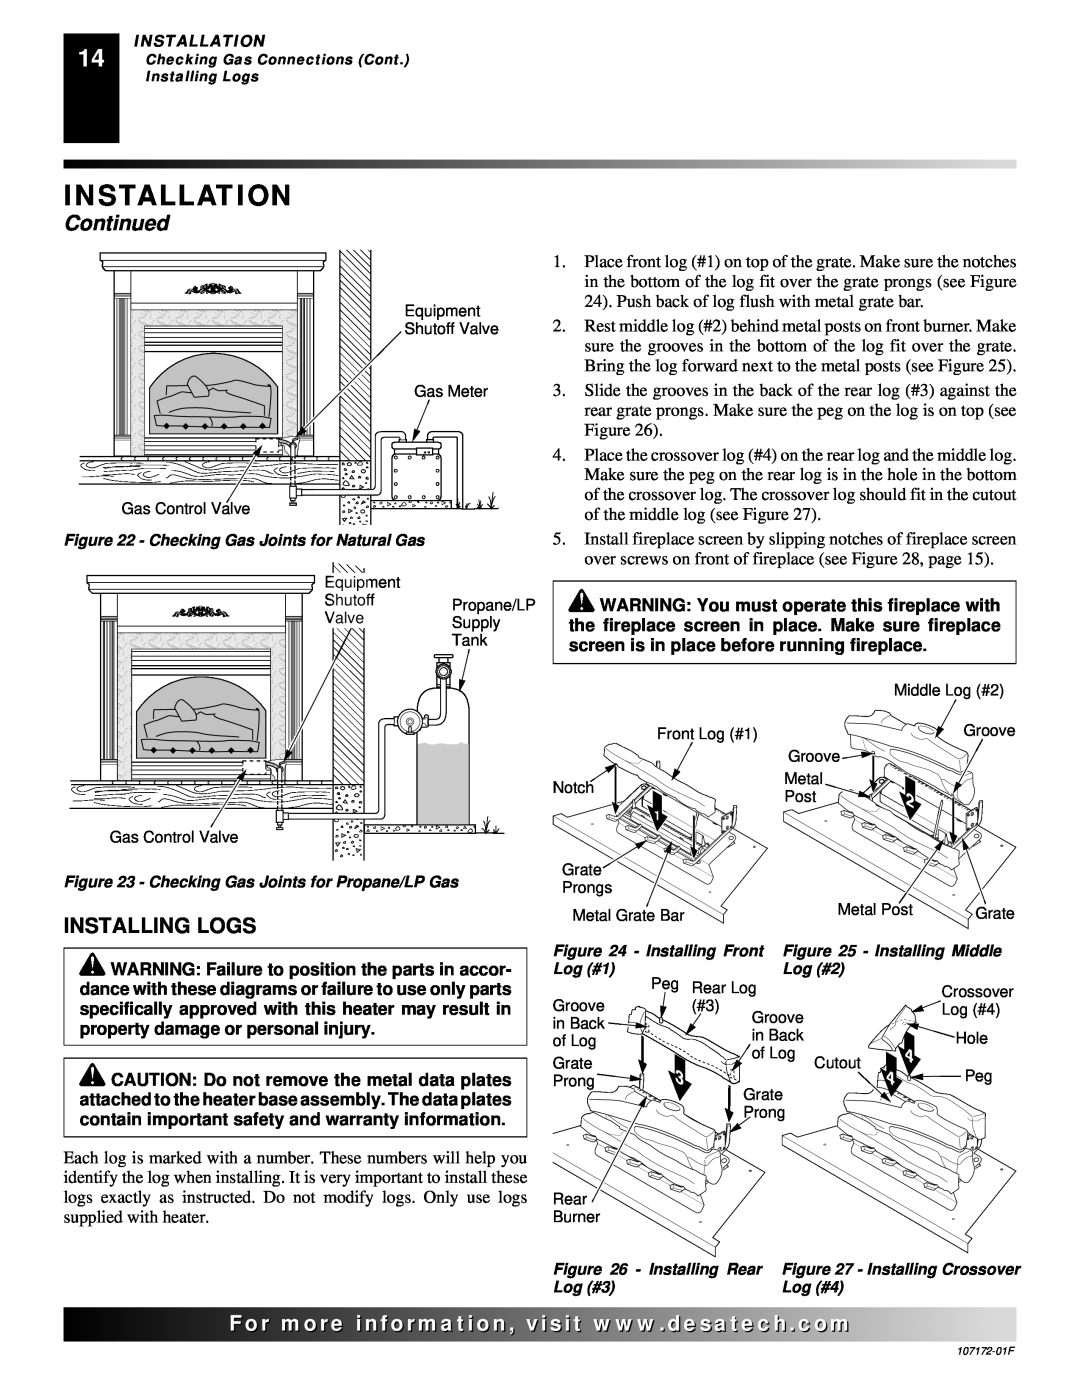 Desa EFS33PR installation manual Installing Logs, Installation, Continued 